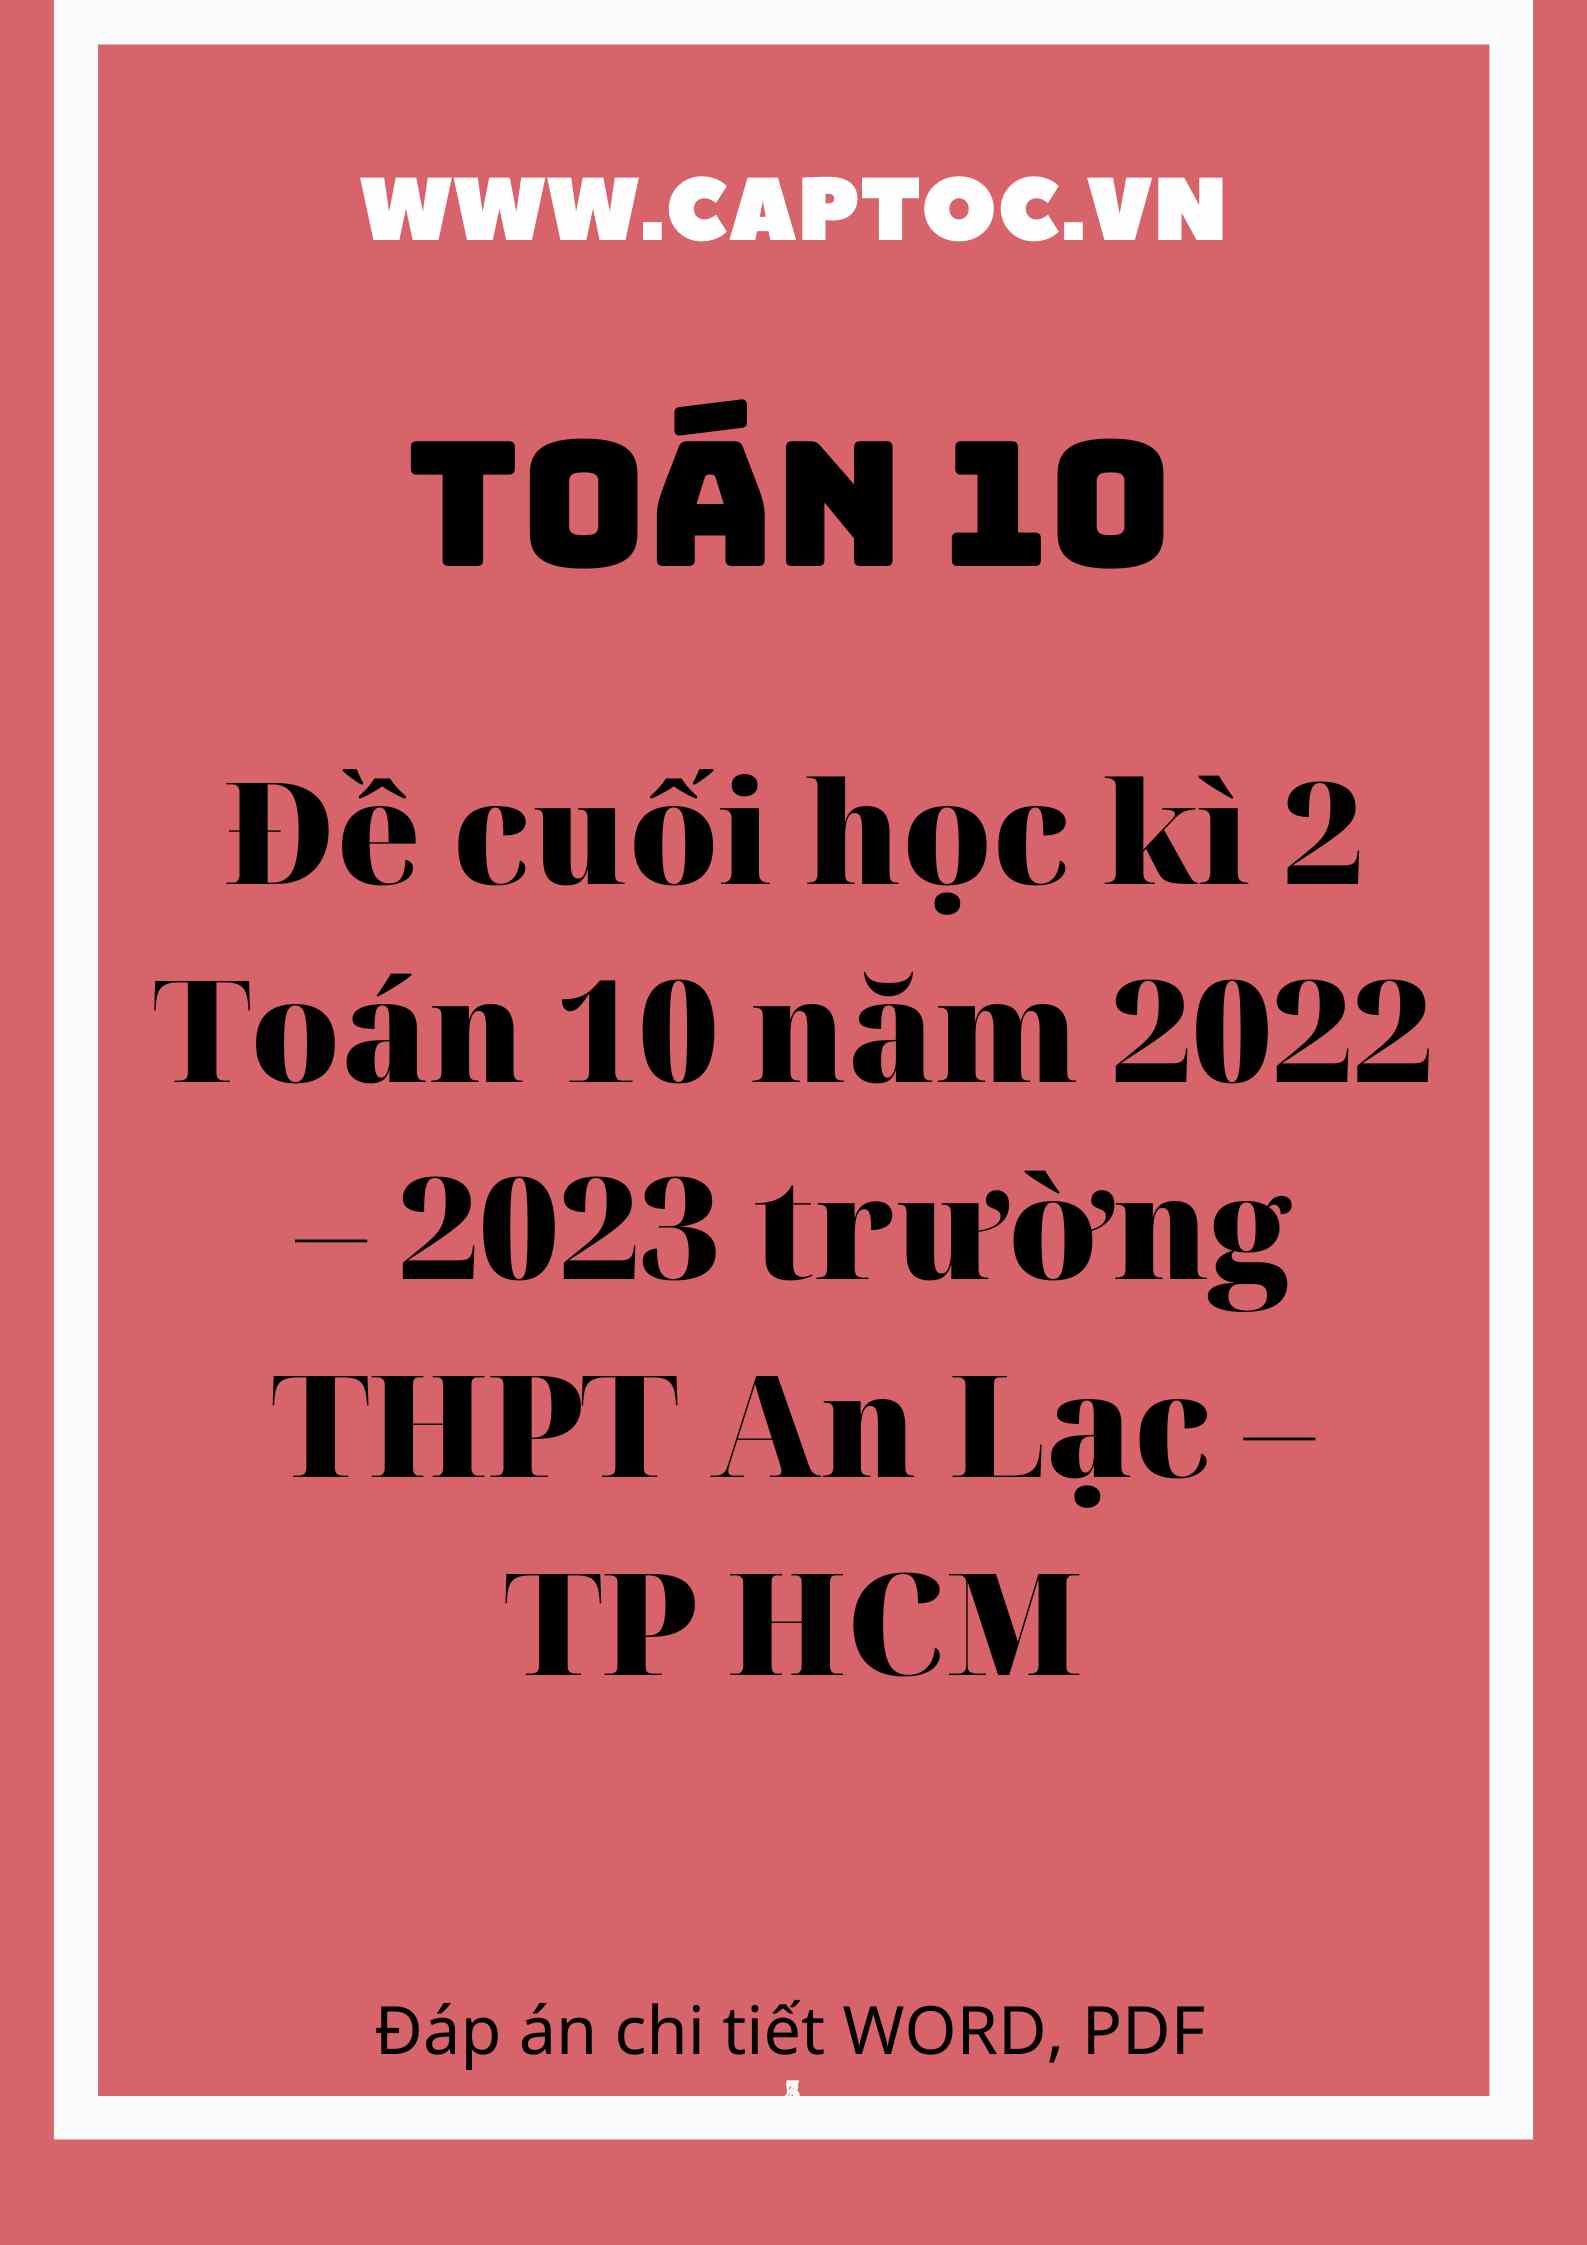 Đề cuối học kì 2 Toán 10 năm 2022 – 2023 trường THPT An Lạc – TP HCM